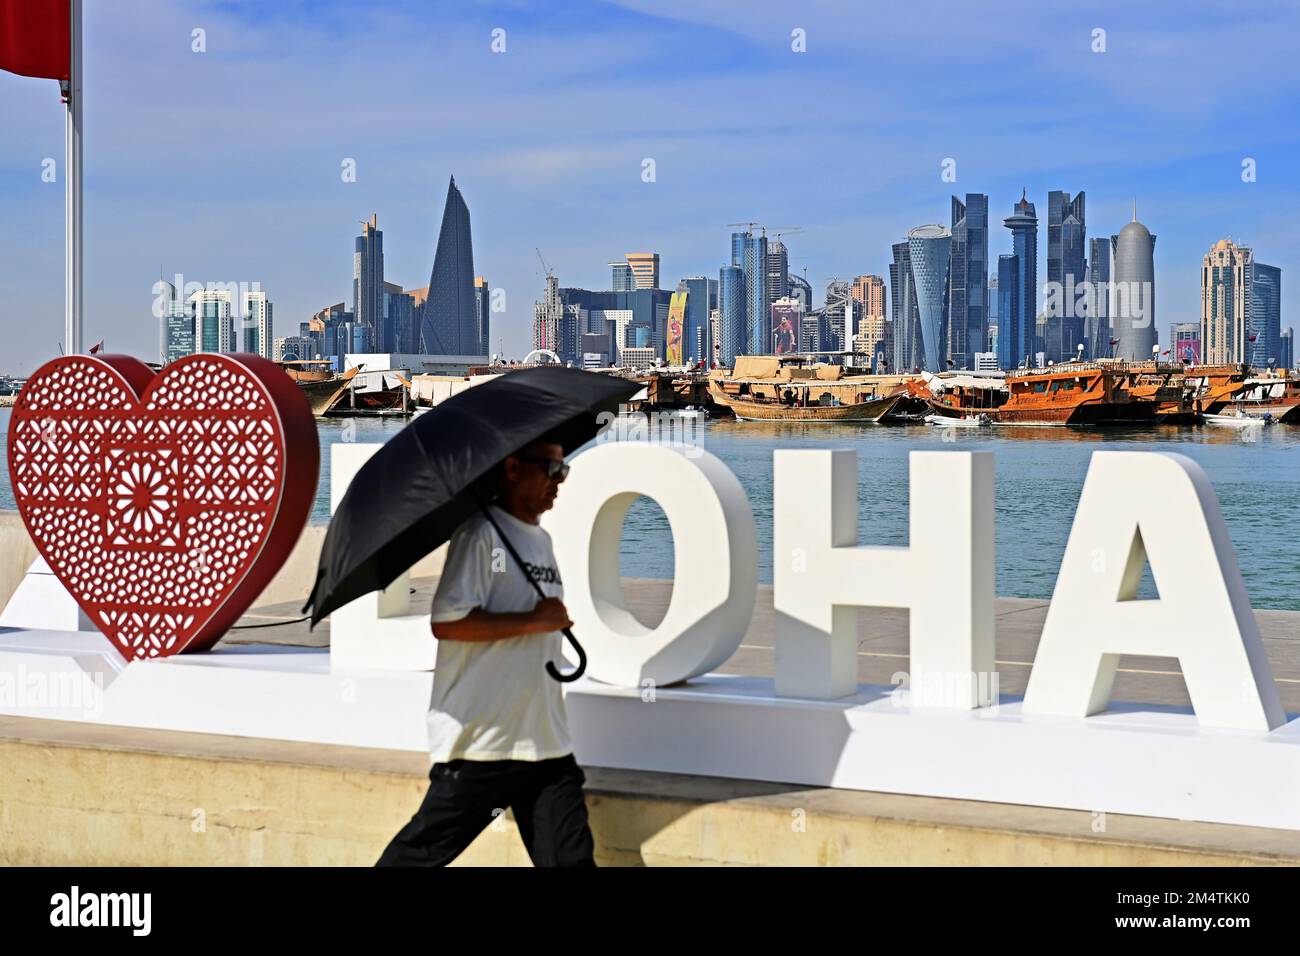 Impressioni da Doha/Qatar il 29th novembre 2022. FIFA Fanfest, Corniche West Bay.The Corniche. Amo Doha, lo skyline, la silhouette, il grattacielo. Uomo con ombrello Coppa del mondo di calcio 2022 in Qatar dal 20,11. 18.12.2022 Foto Stock